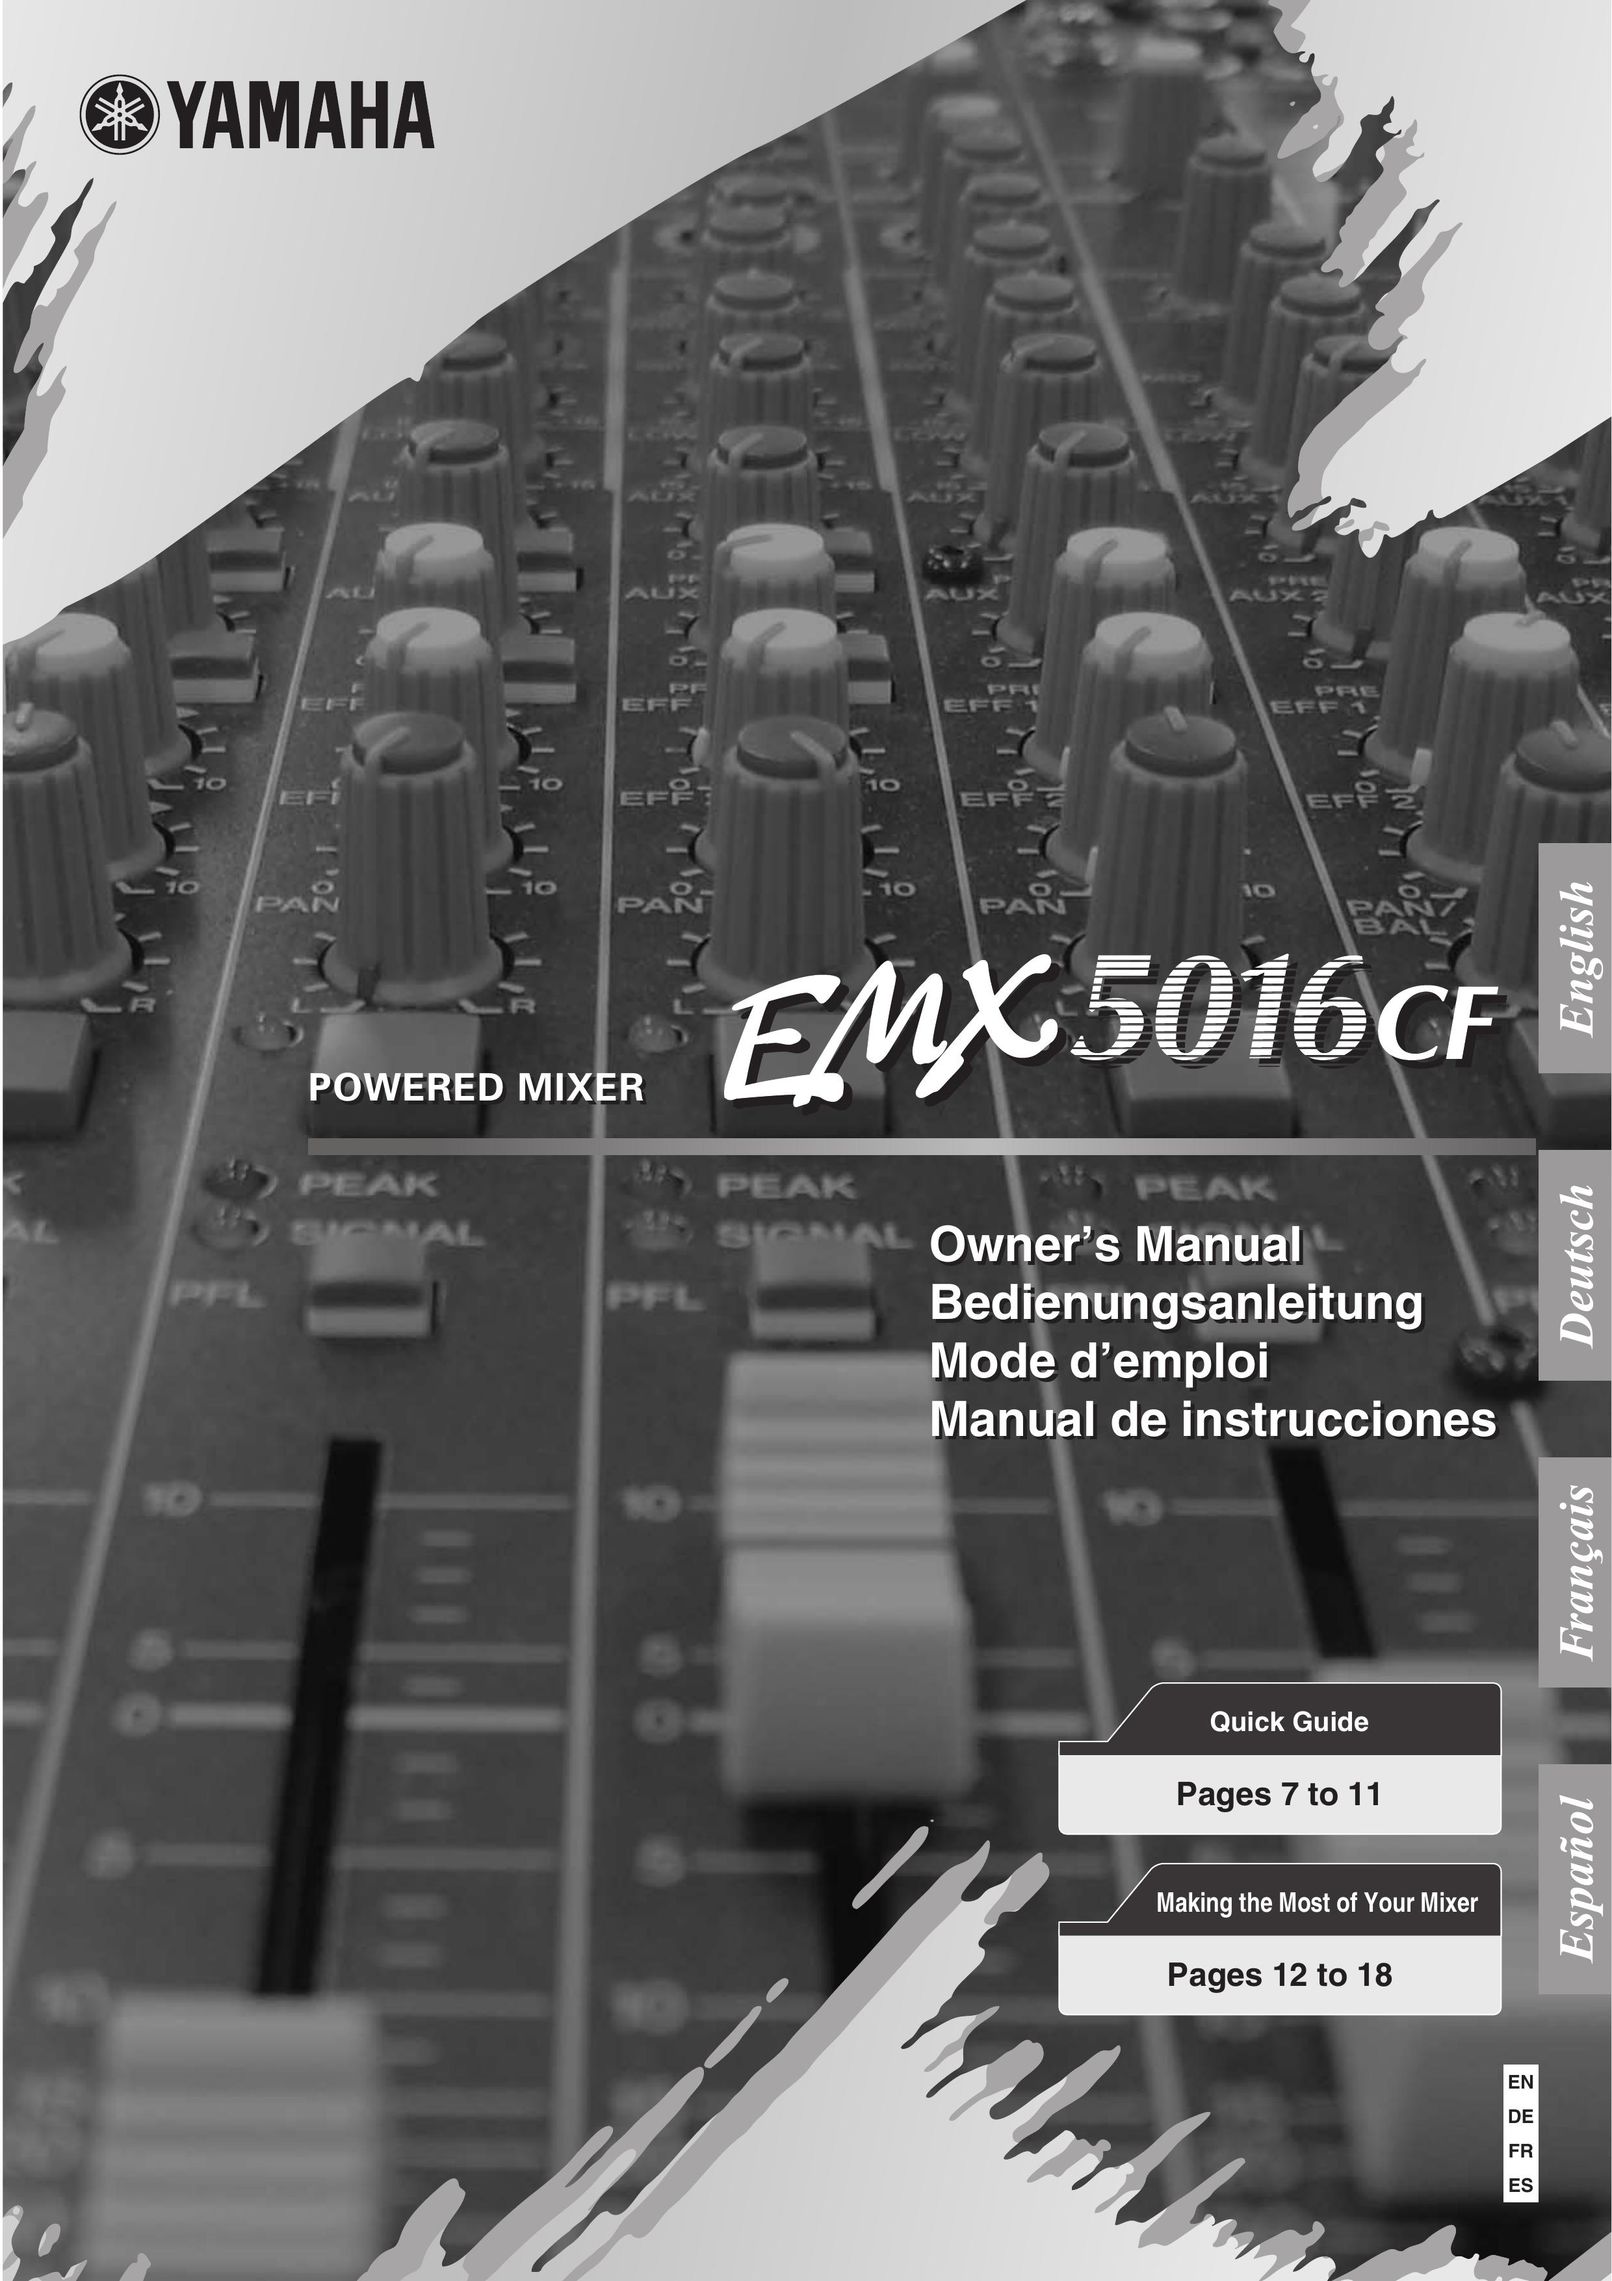 Yamaha EMX5016CF Mixer User Manual